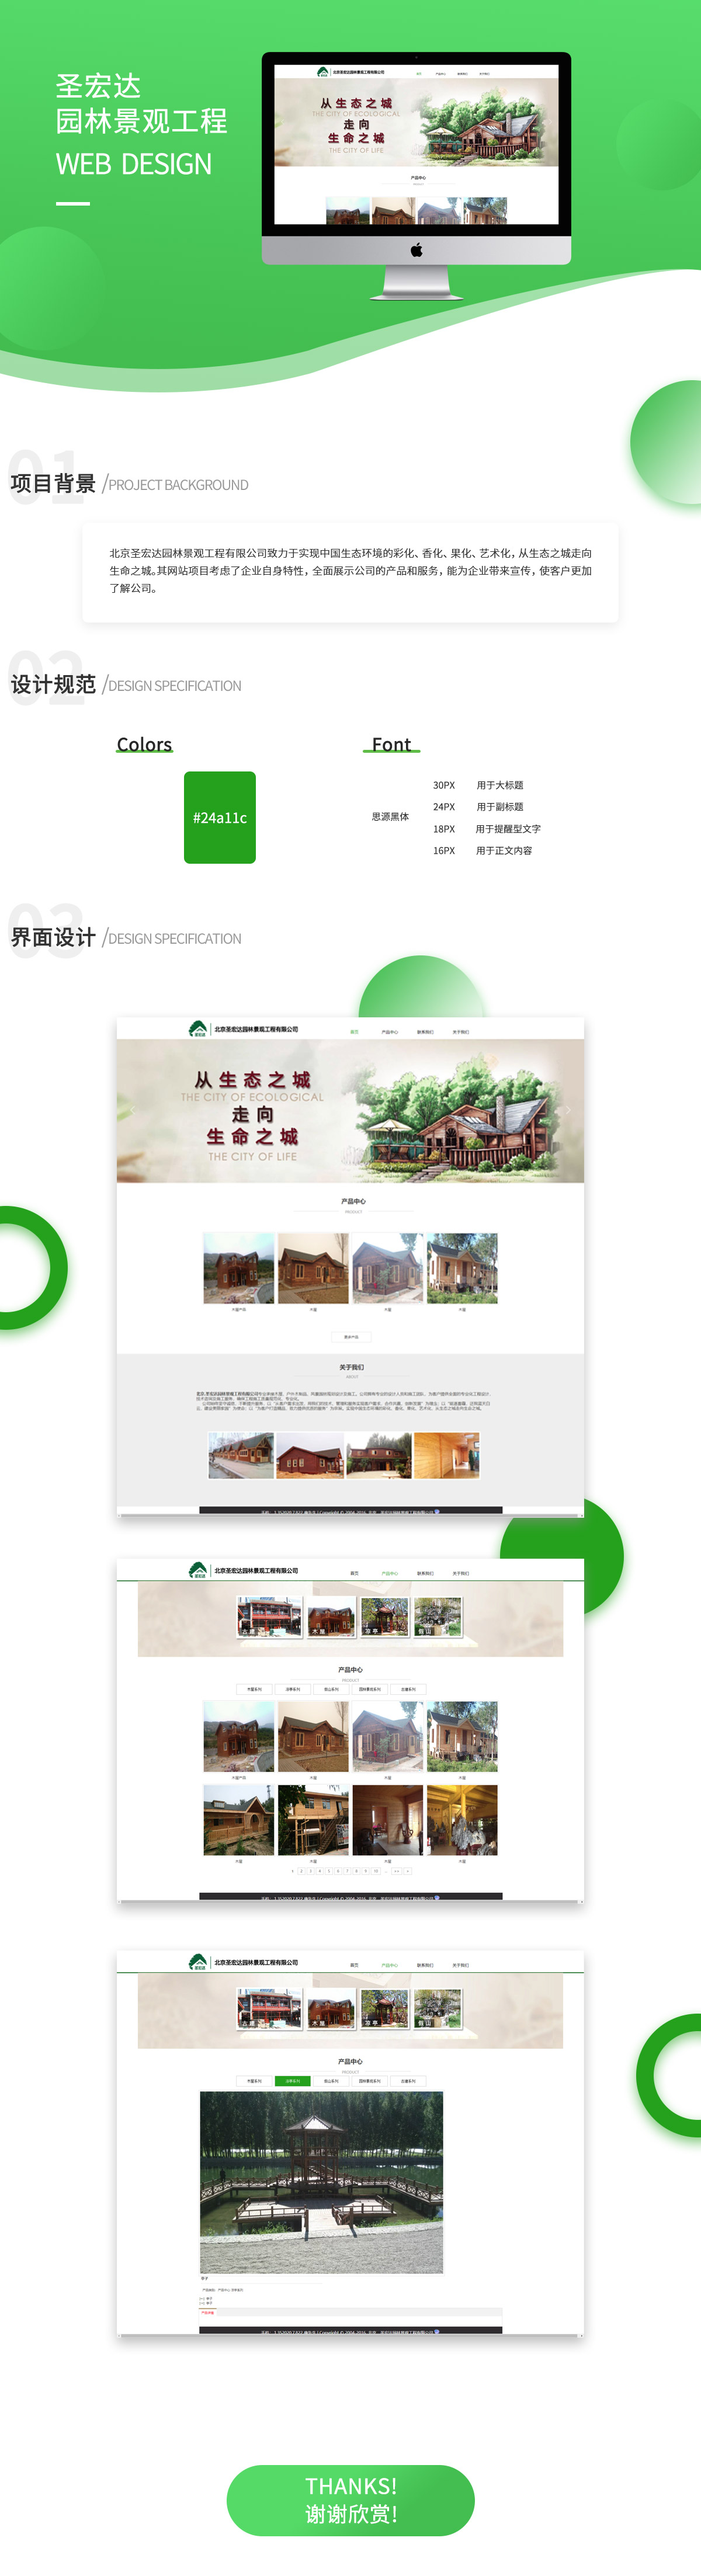 北京圣宏达园林景观工程有限企业网站